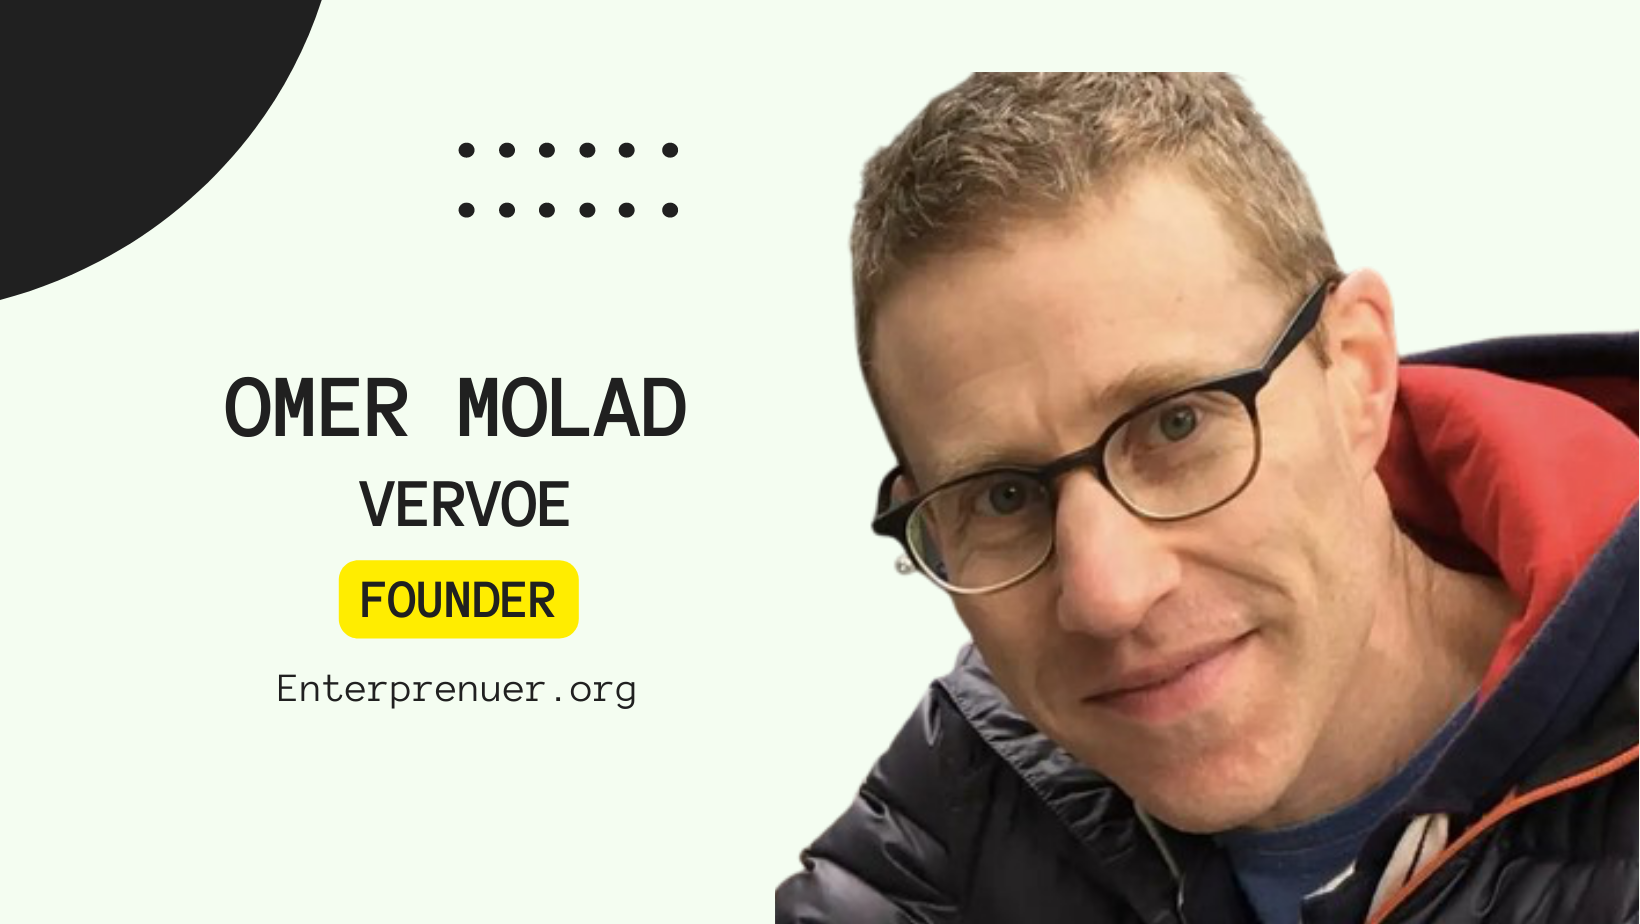 Omer Molad Co-Founder of Vervoe